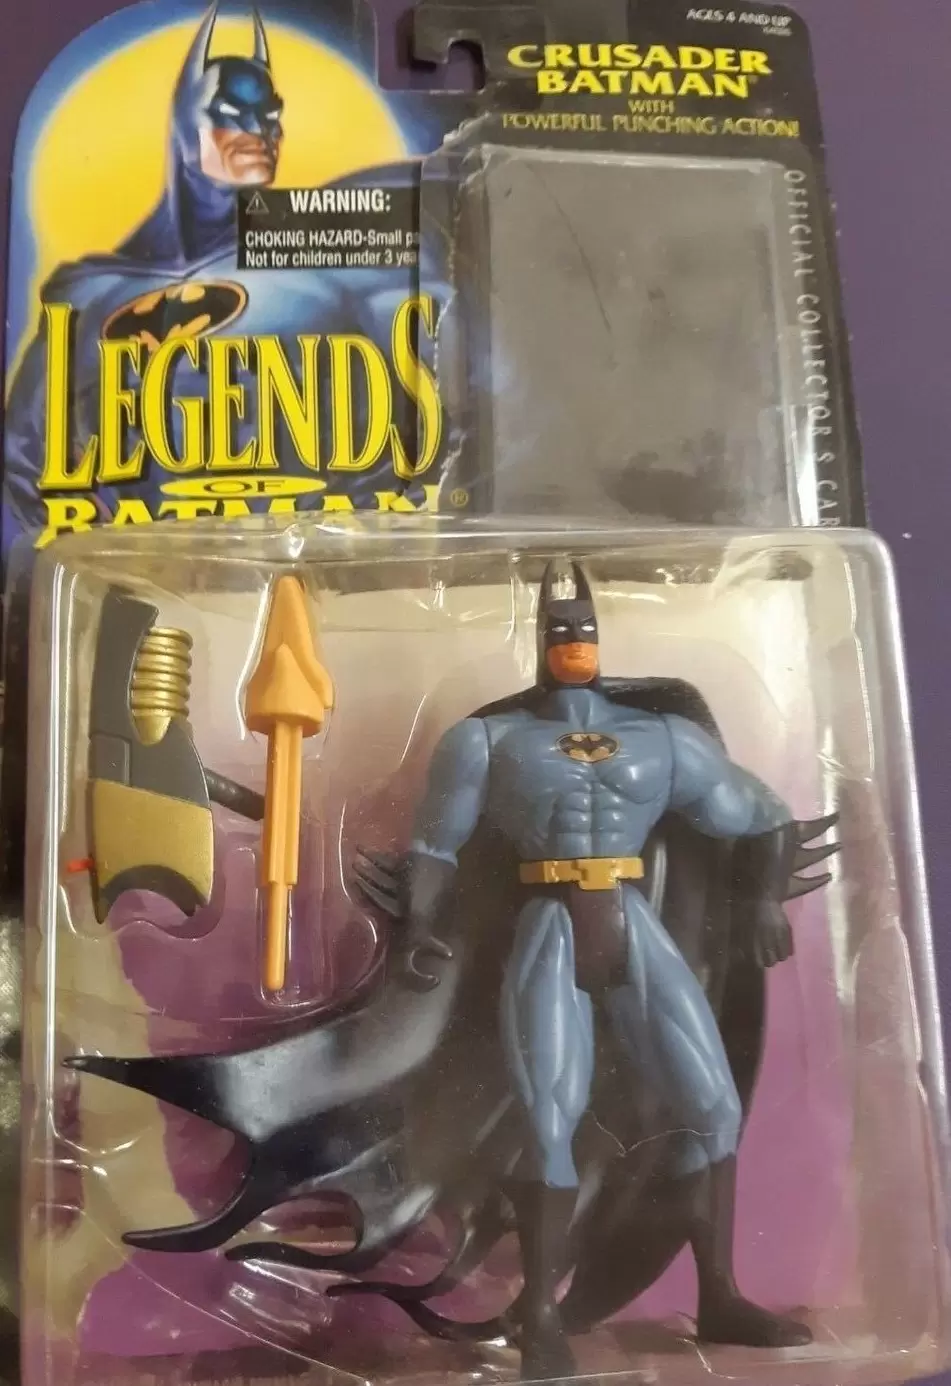 Legends of the Batman - Crusader Batman